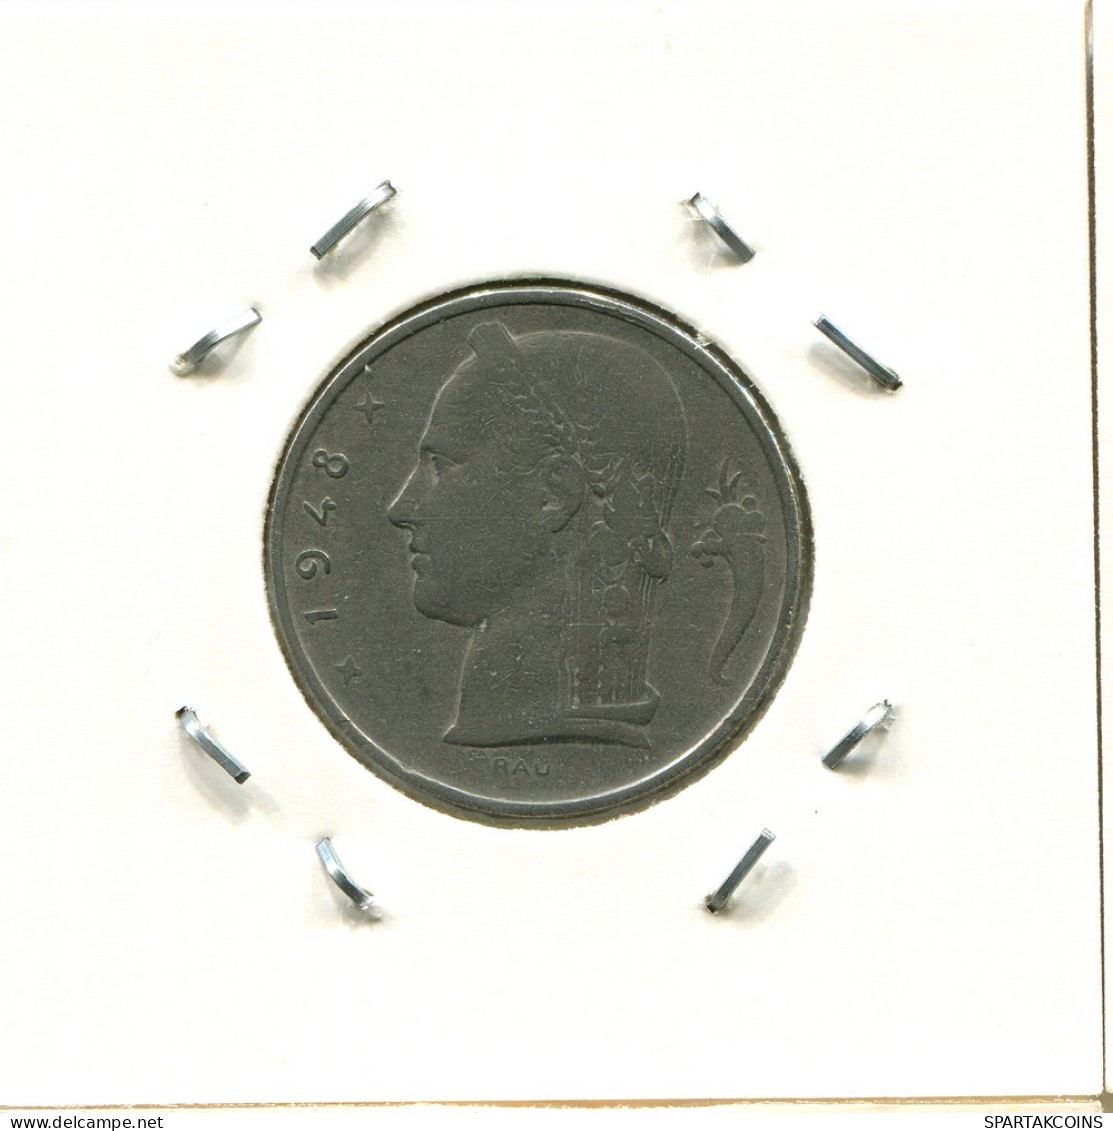 5 FRANCS 1948 DUTCH Text BELGIUM Coin #BA574.U - 5 Franc